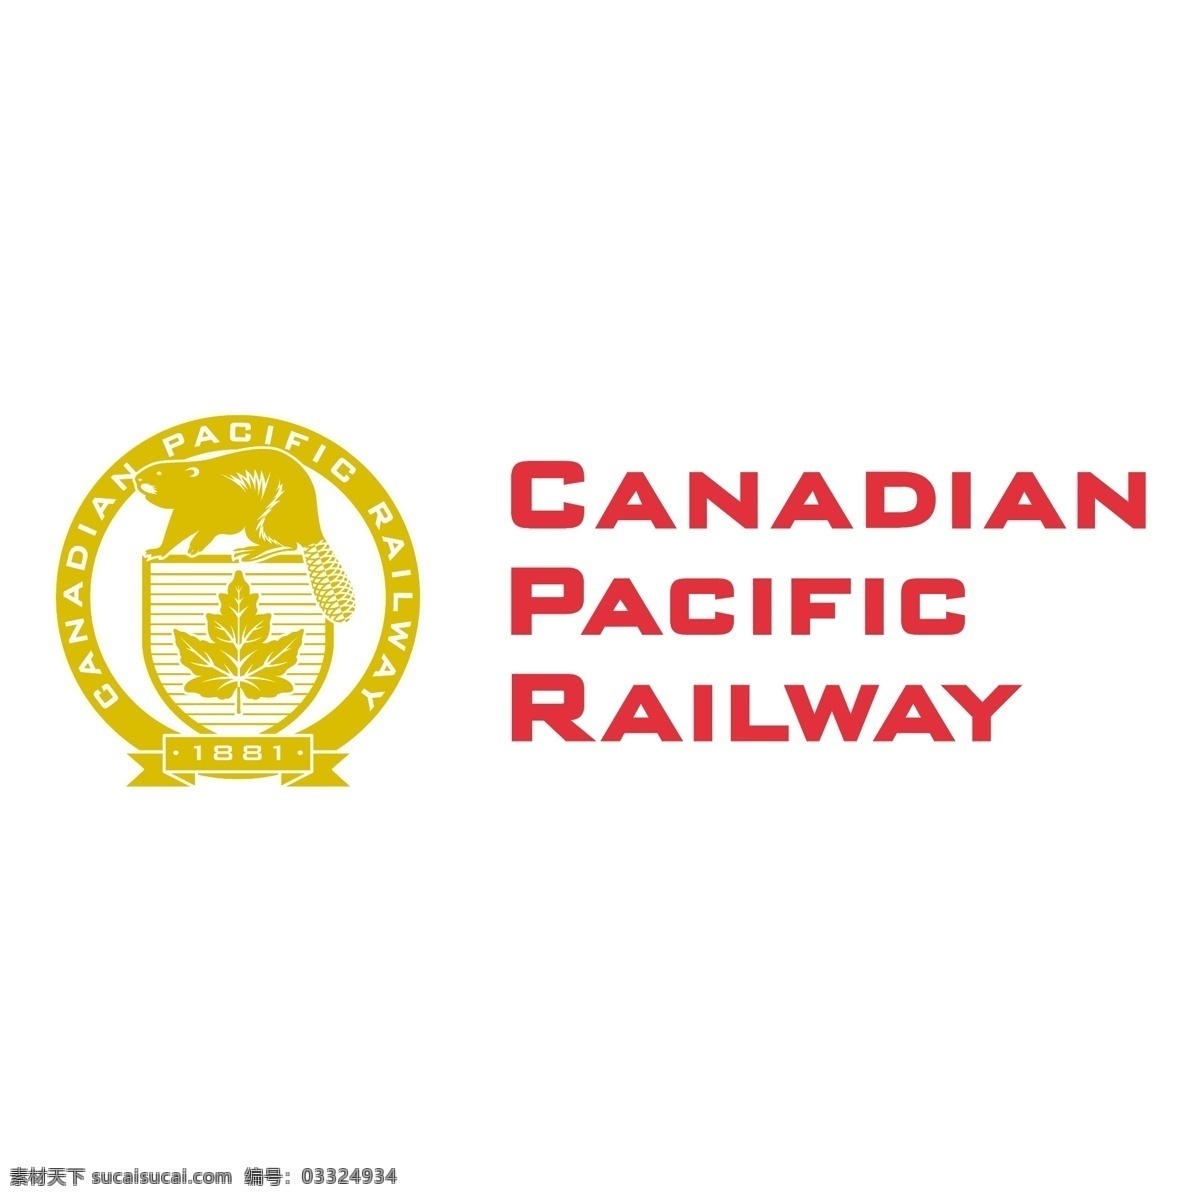 加拿大 太平洋铁路 加拿大太平洋 太平洋 铁路 向量 矢量 国家 白色